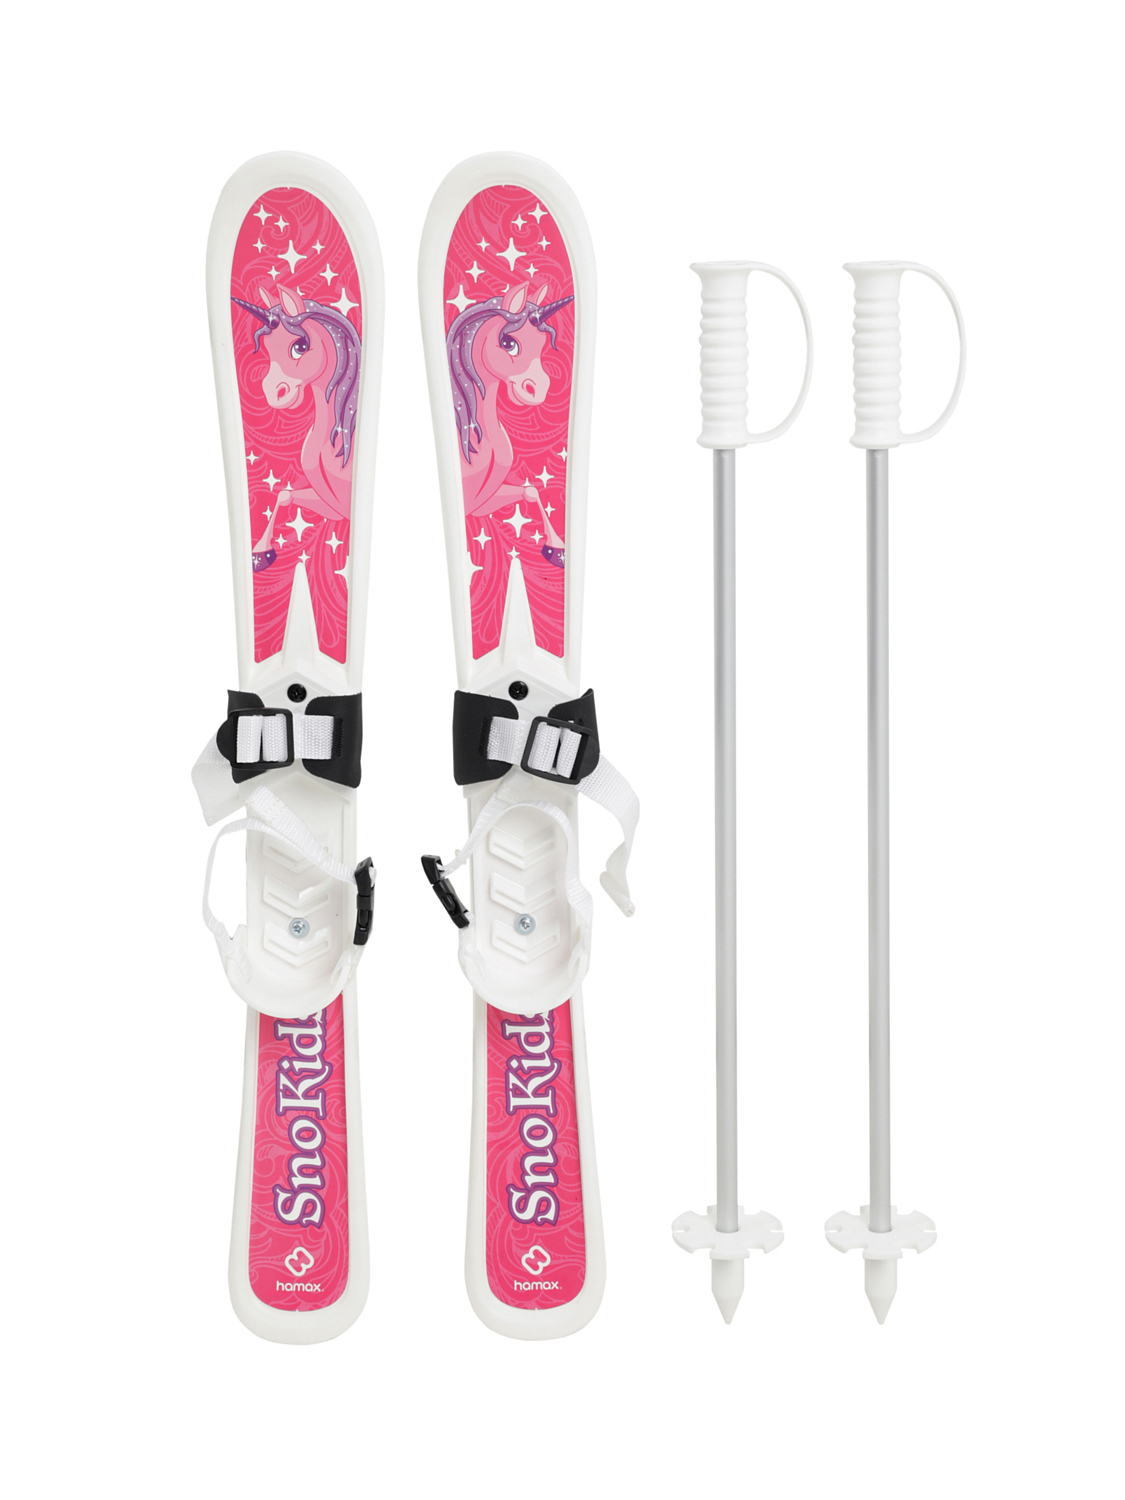 Детские лыжи Hamax Sno Kids Children's Skis With Poles Pink Pony Design